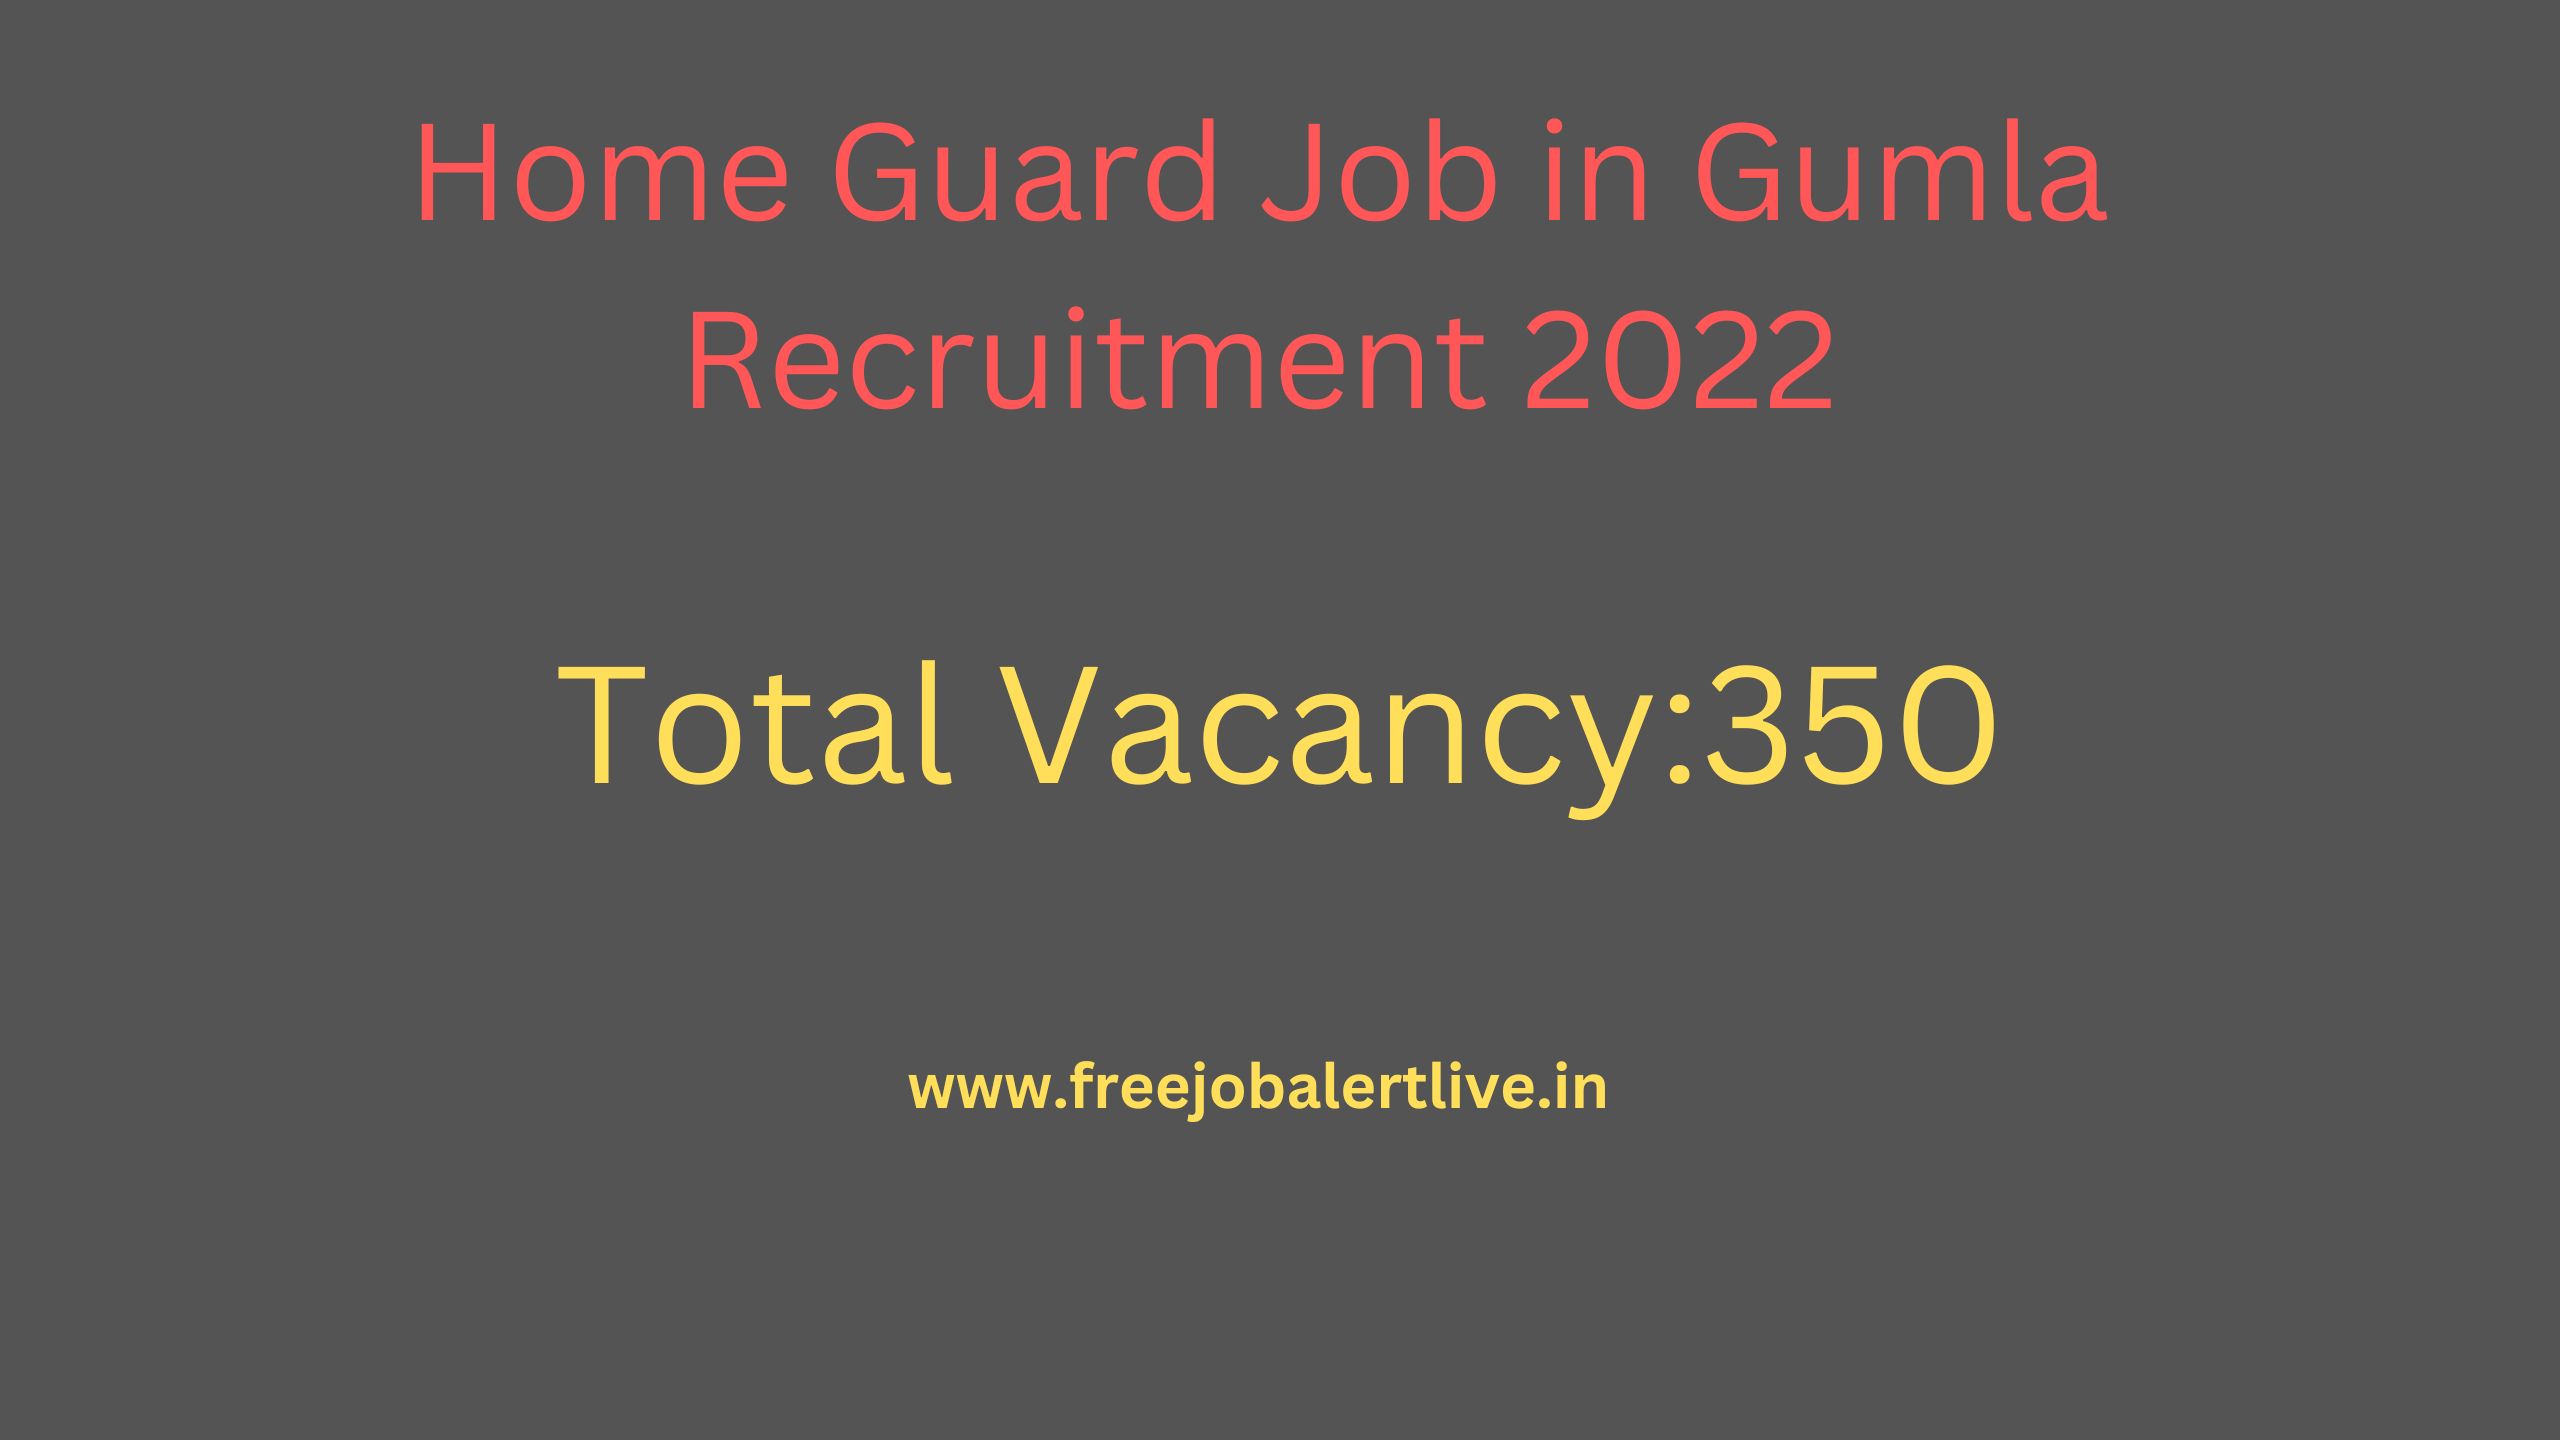 Home Guard Job in Gumla Recruitment 2022